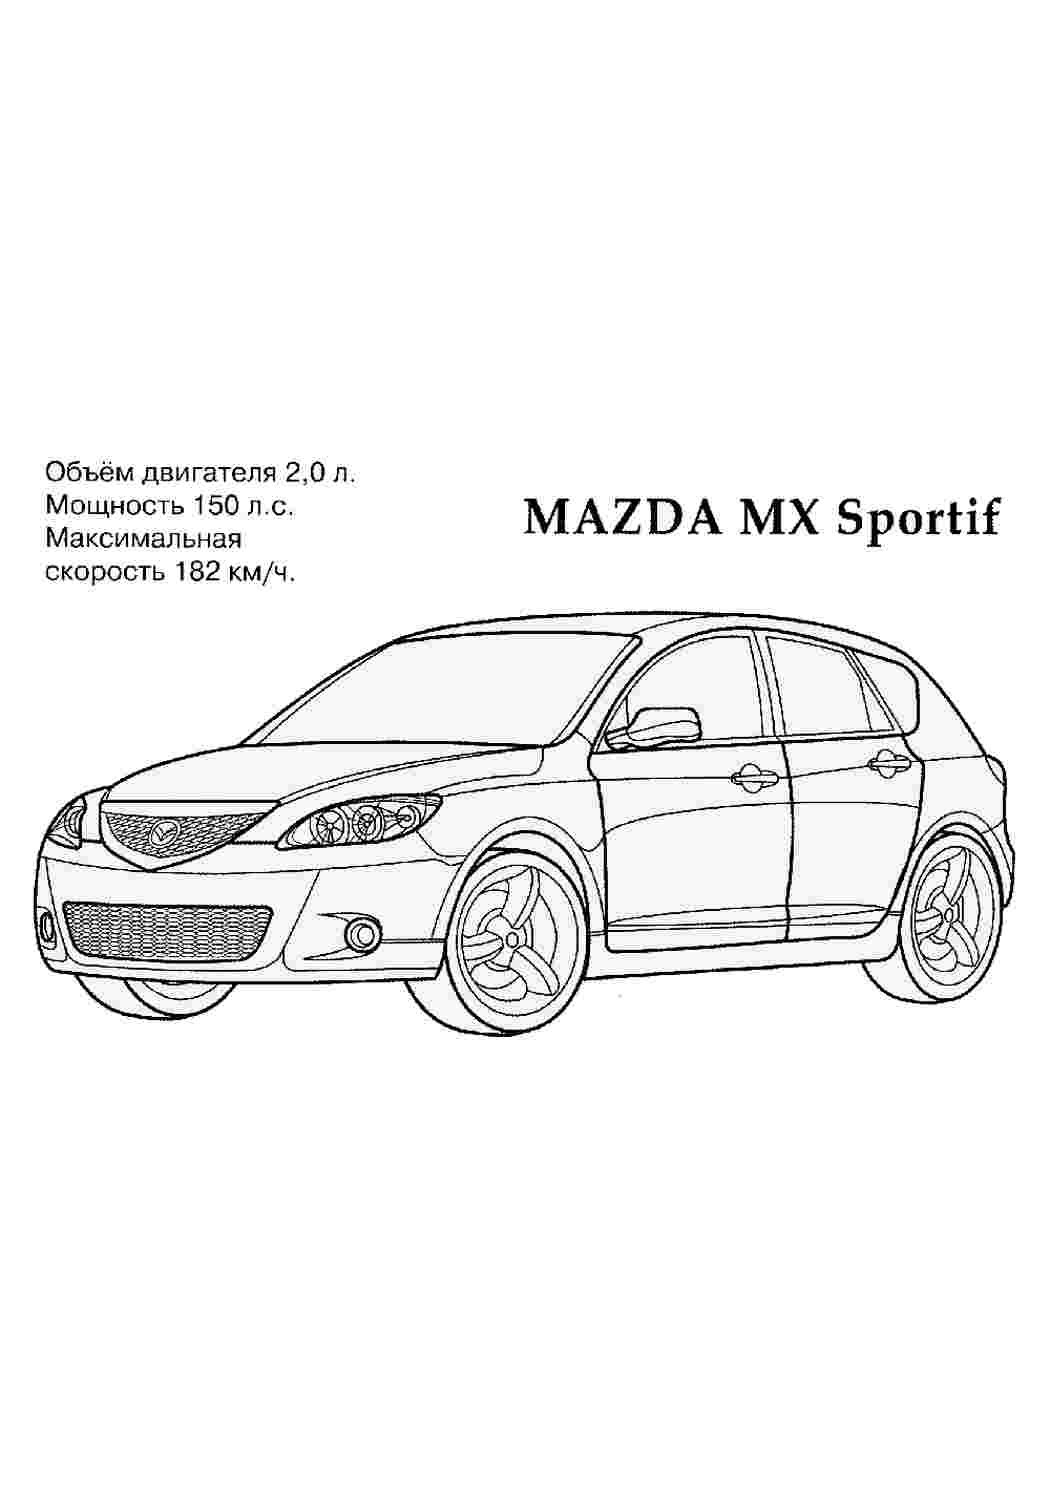 Страница раскрашивания Mazda Rx Изображения – скачать бесплатно на Freepik